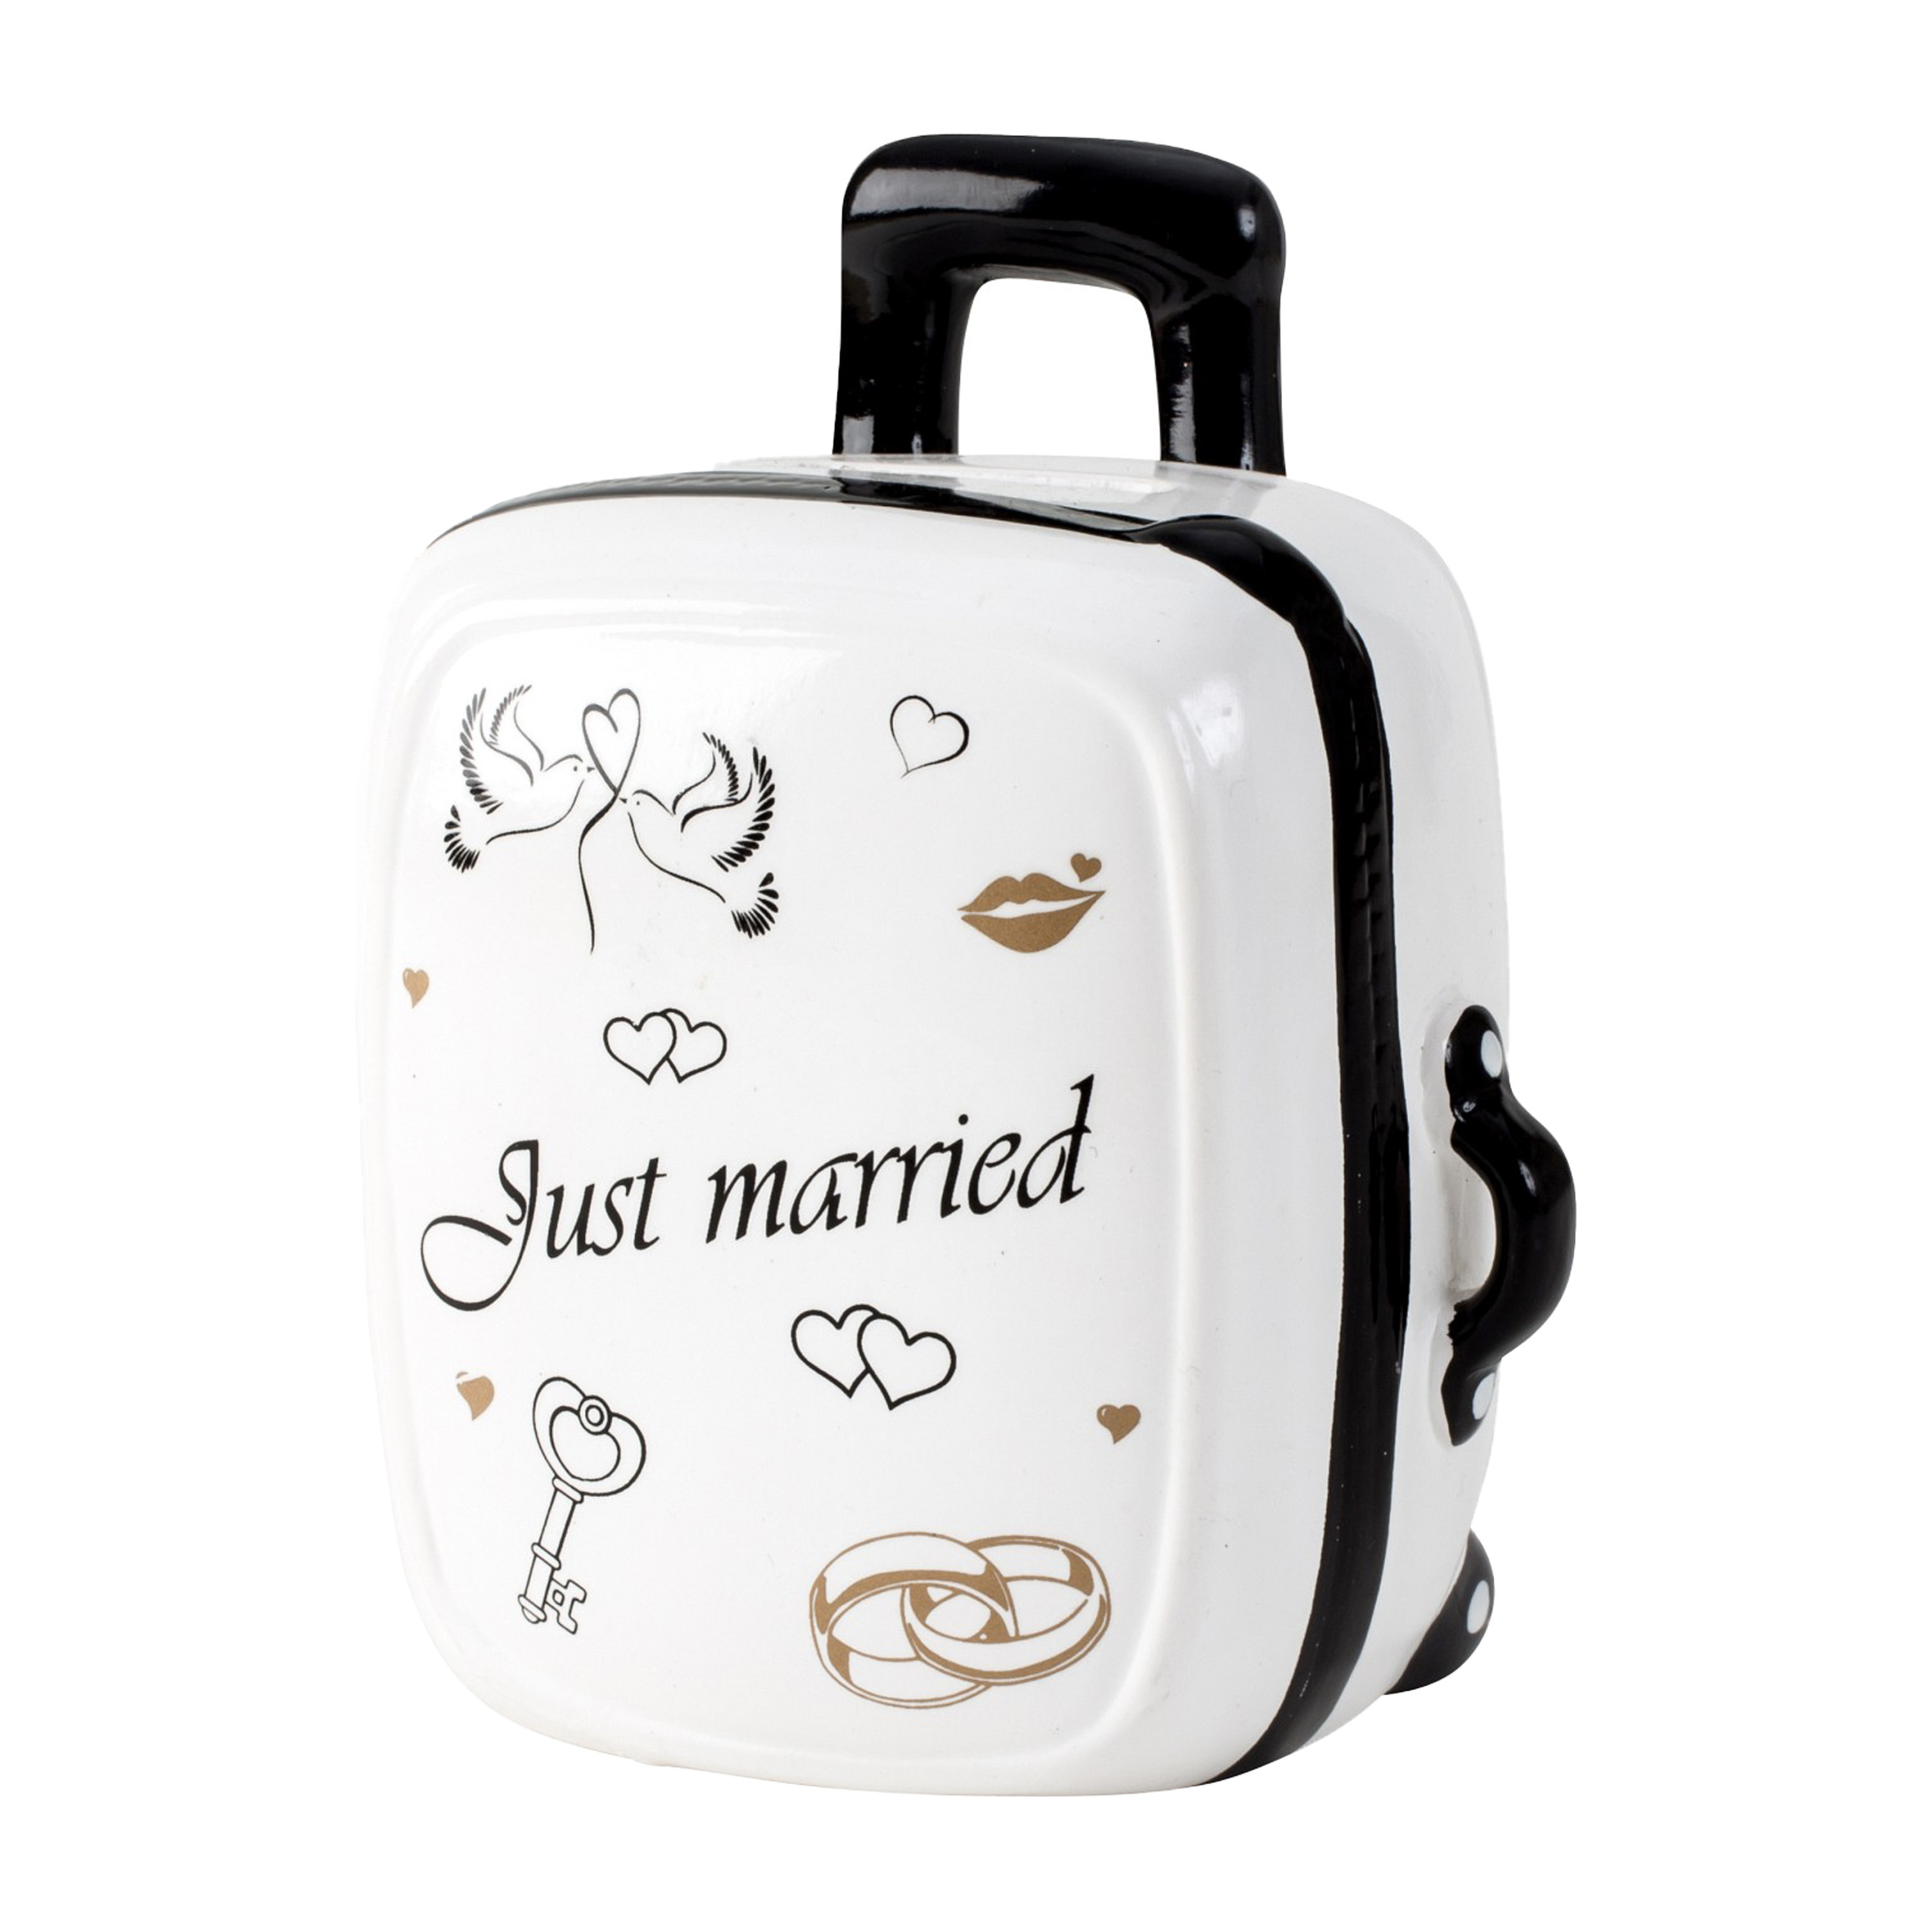 Cepewa Spaarpot voor volwassenen Just Married Keramiek koffer in bruiloft thema 15 x 12 cm